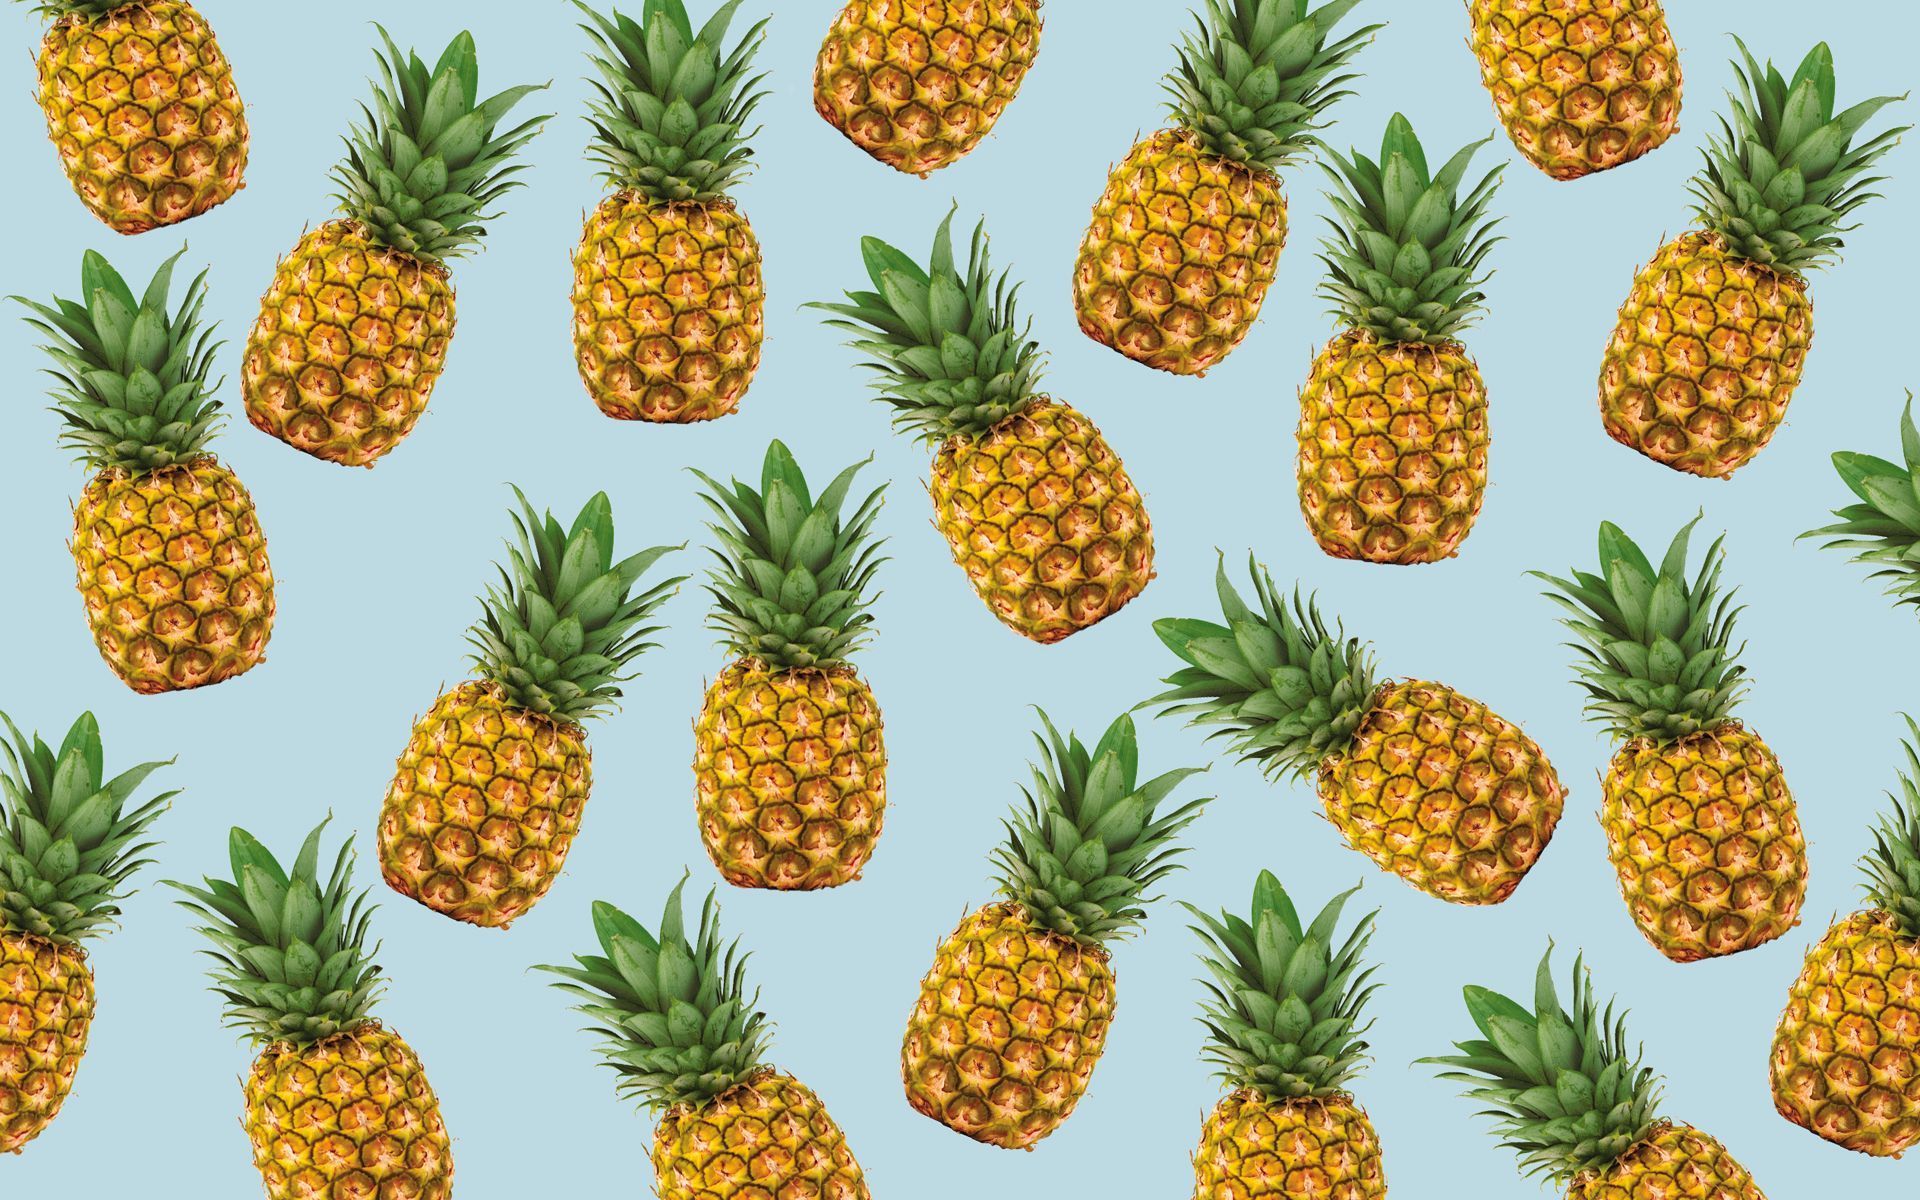 Pineapple Art Wallpaper  Pineapple Aesthetic Wallpaper for iPhone